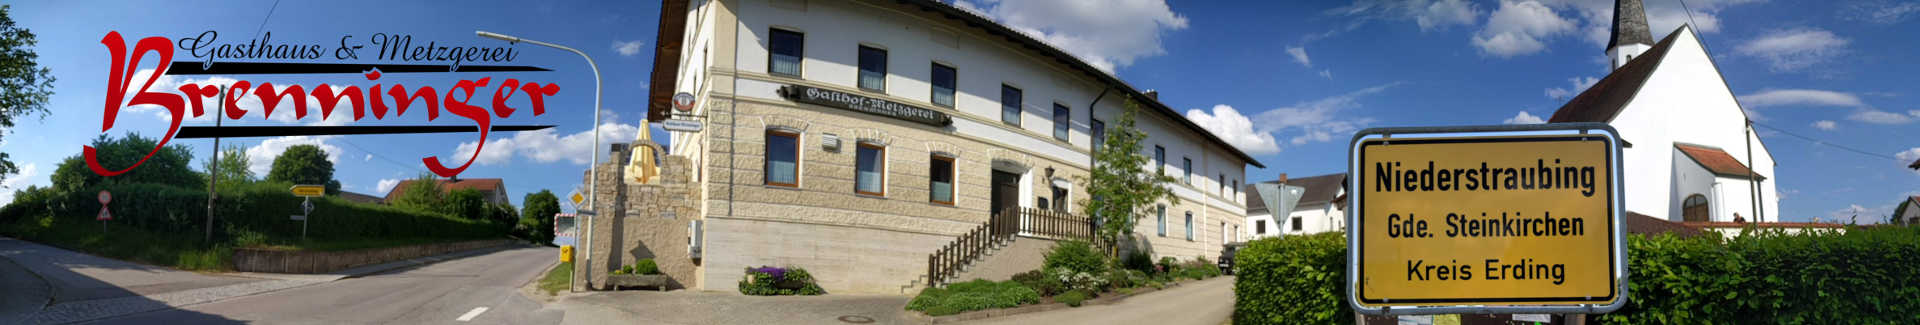 Gasthaus und Metzgerei Brenninger